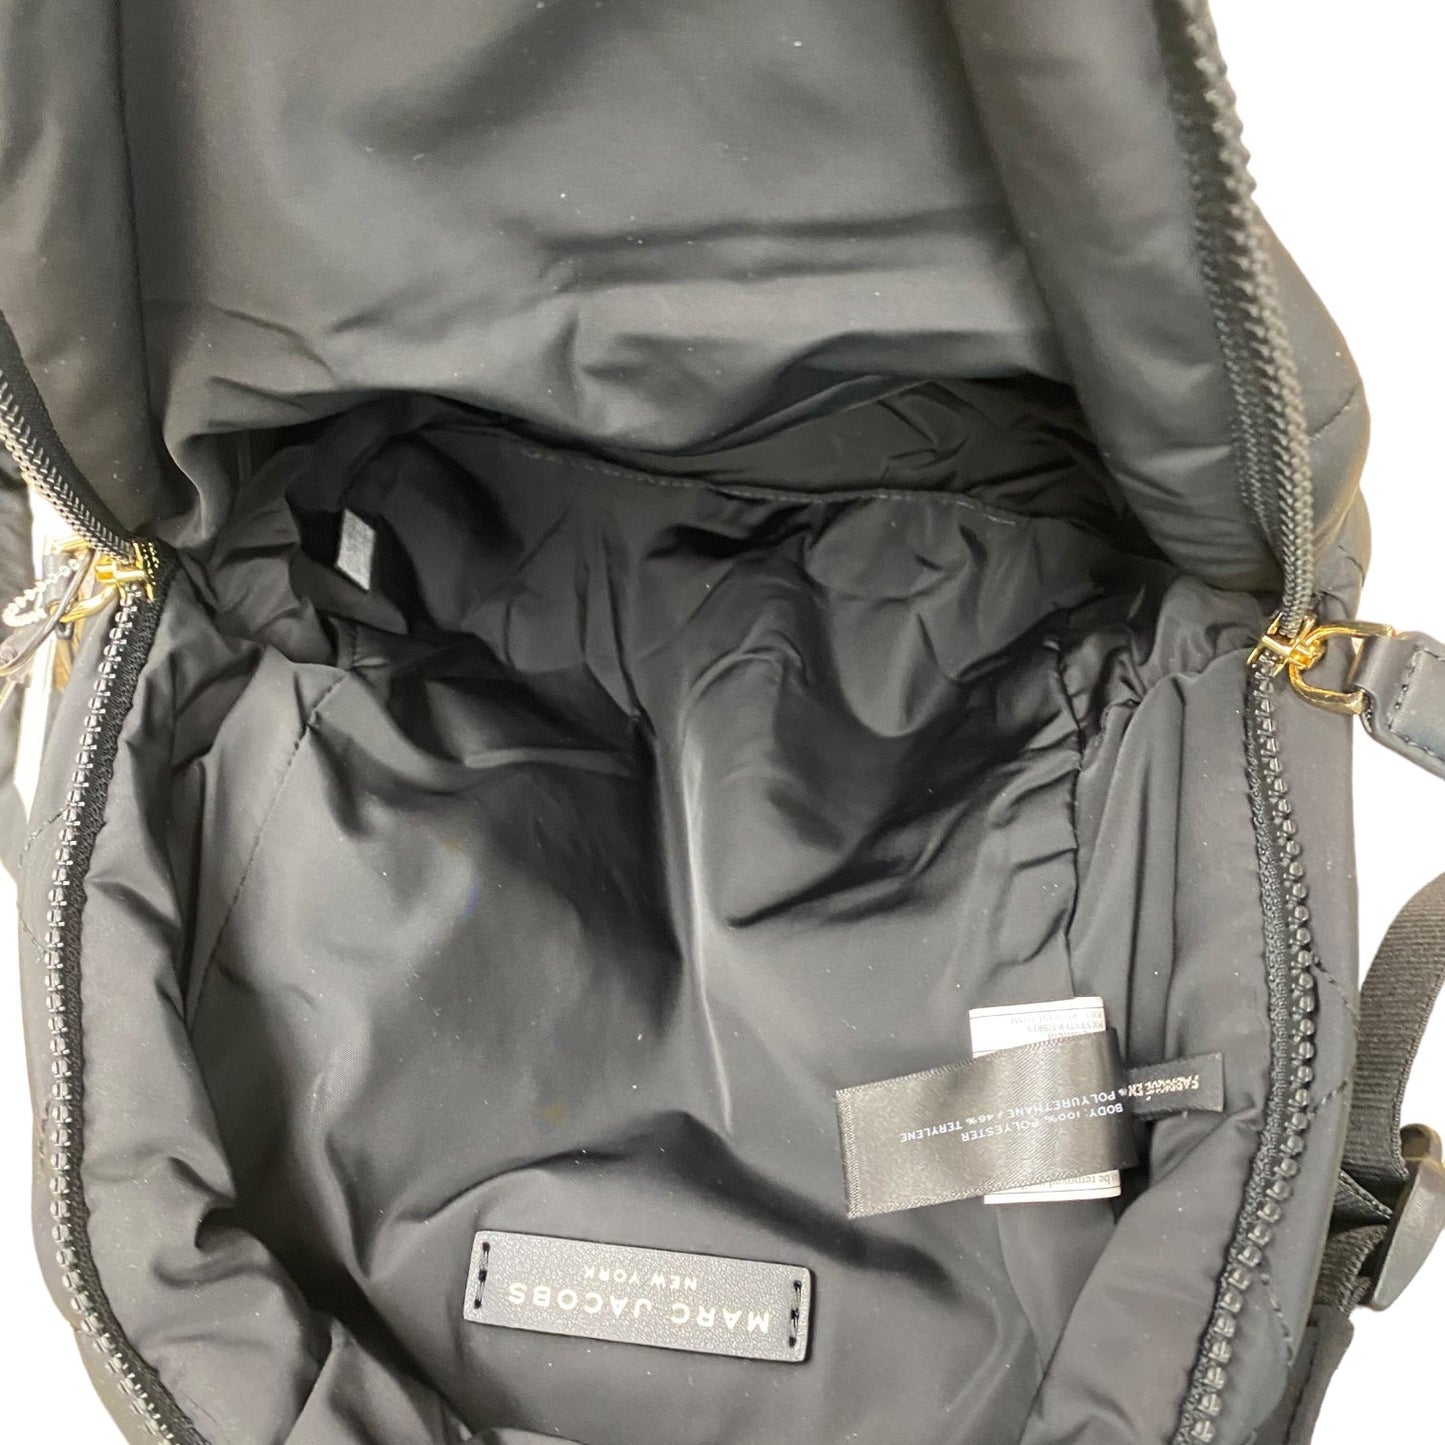 Backpack Designer Marc Jacobs, Size Medium